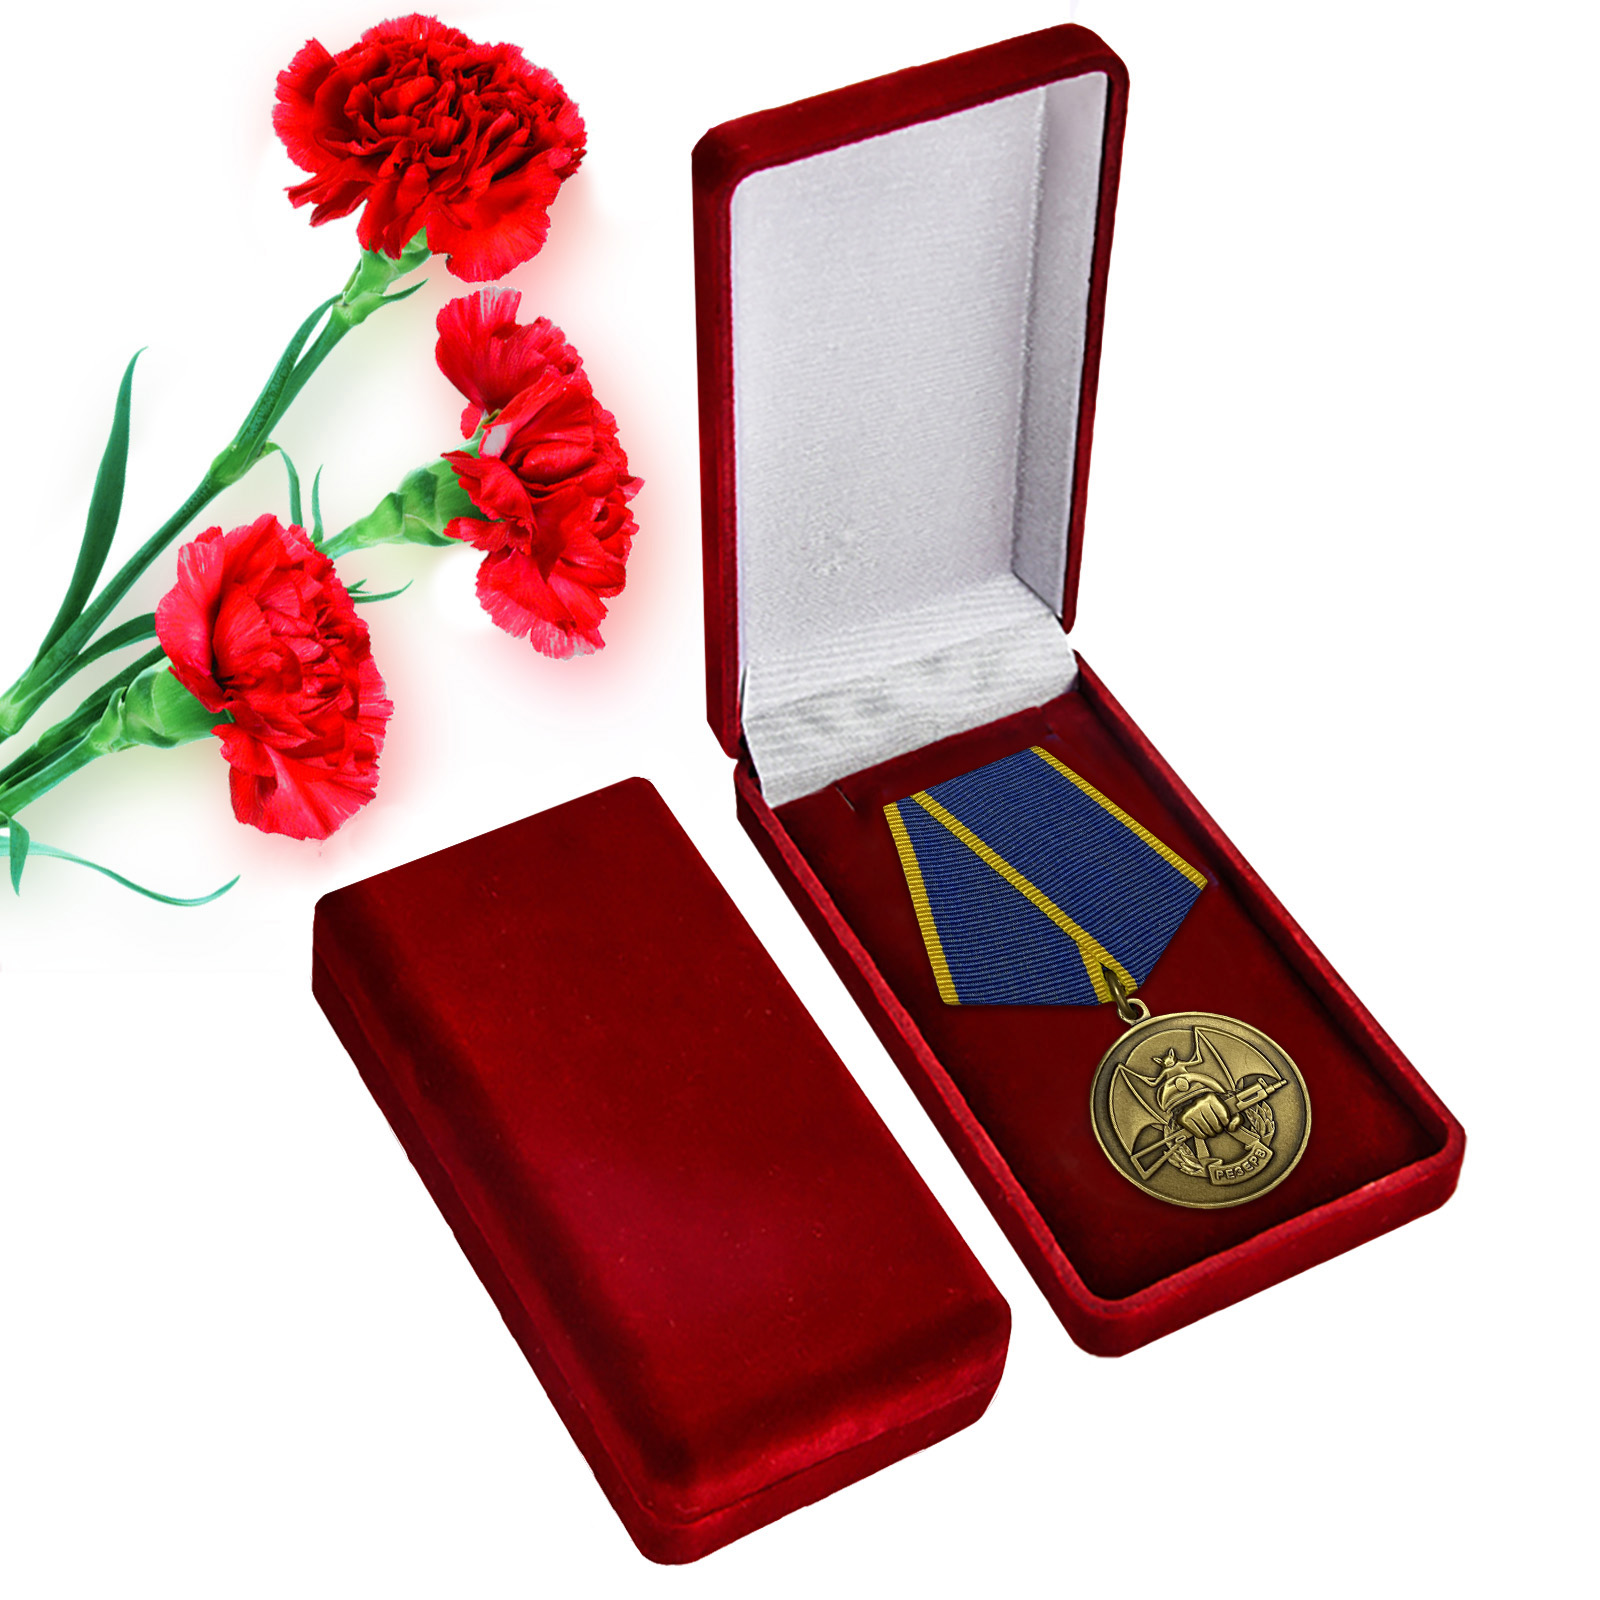 Купить общественную медаль Ассоциации Ветеранов Спецназа "Резерв" в подарок